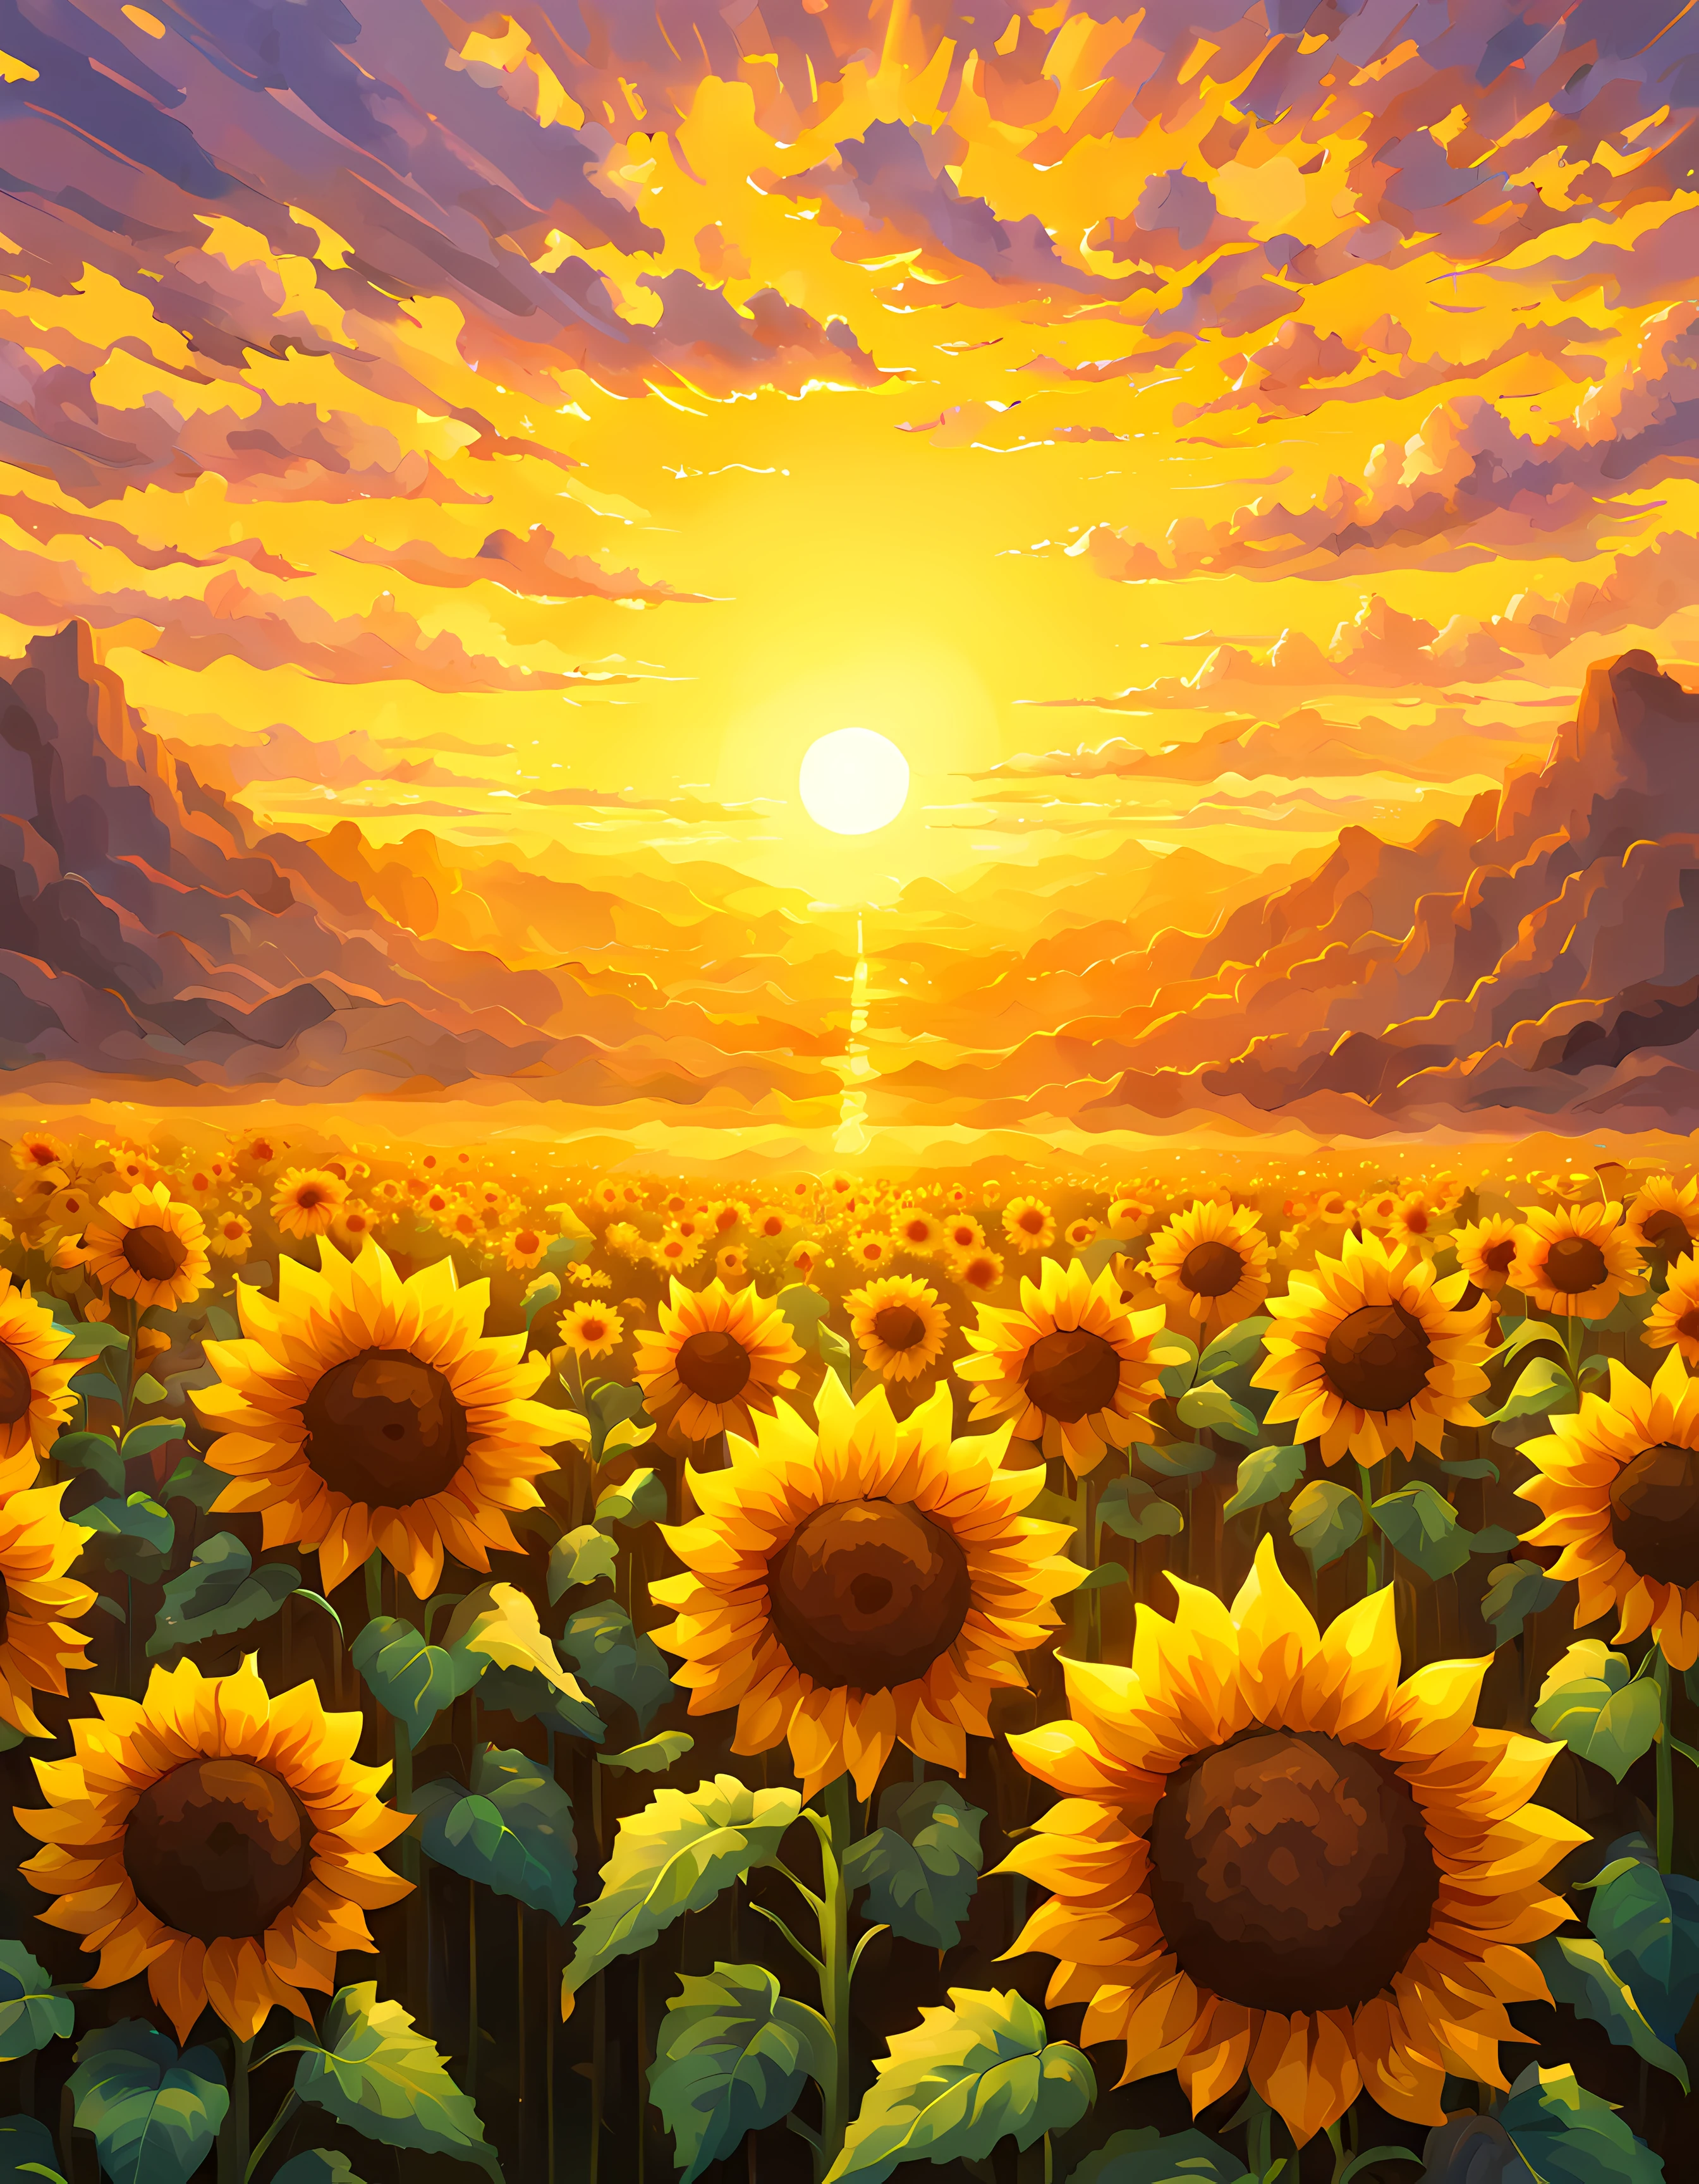 (пиксель арт:1.3), (крупный план:1.3), обширное открытое поле, залитое мягкими оттенками захватывающего дух рассвета, в центре этой сцены стоит одинокий подсолнух, его яркие желтые лепестки, освещенные золотыми лучами солнца, прикосновение волшебства наполняет воздух, заставляя подсолнух излучать неземное сияние, впитывая энергию и тепло самого солнца, чувство трепета и удивления, красота и мощь природы, Более детально